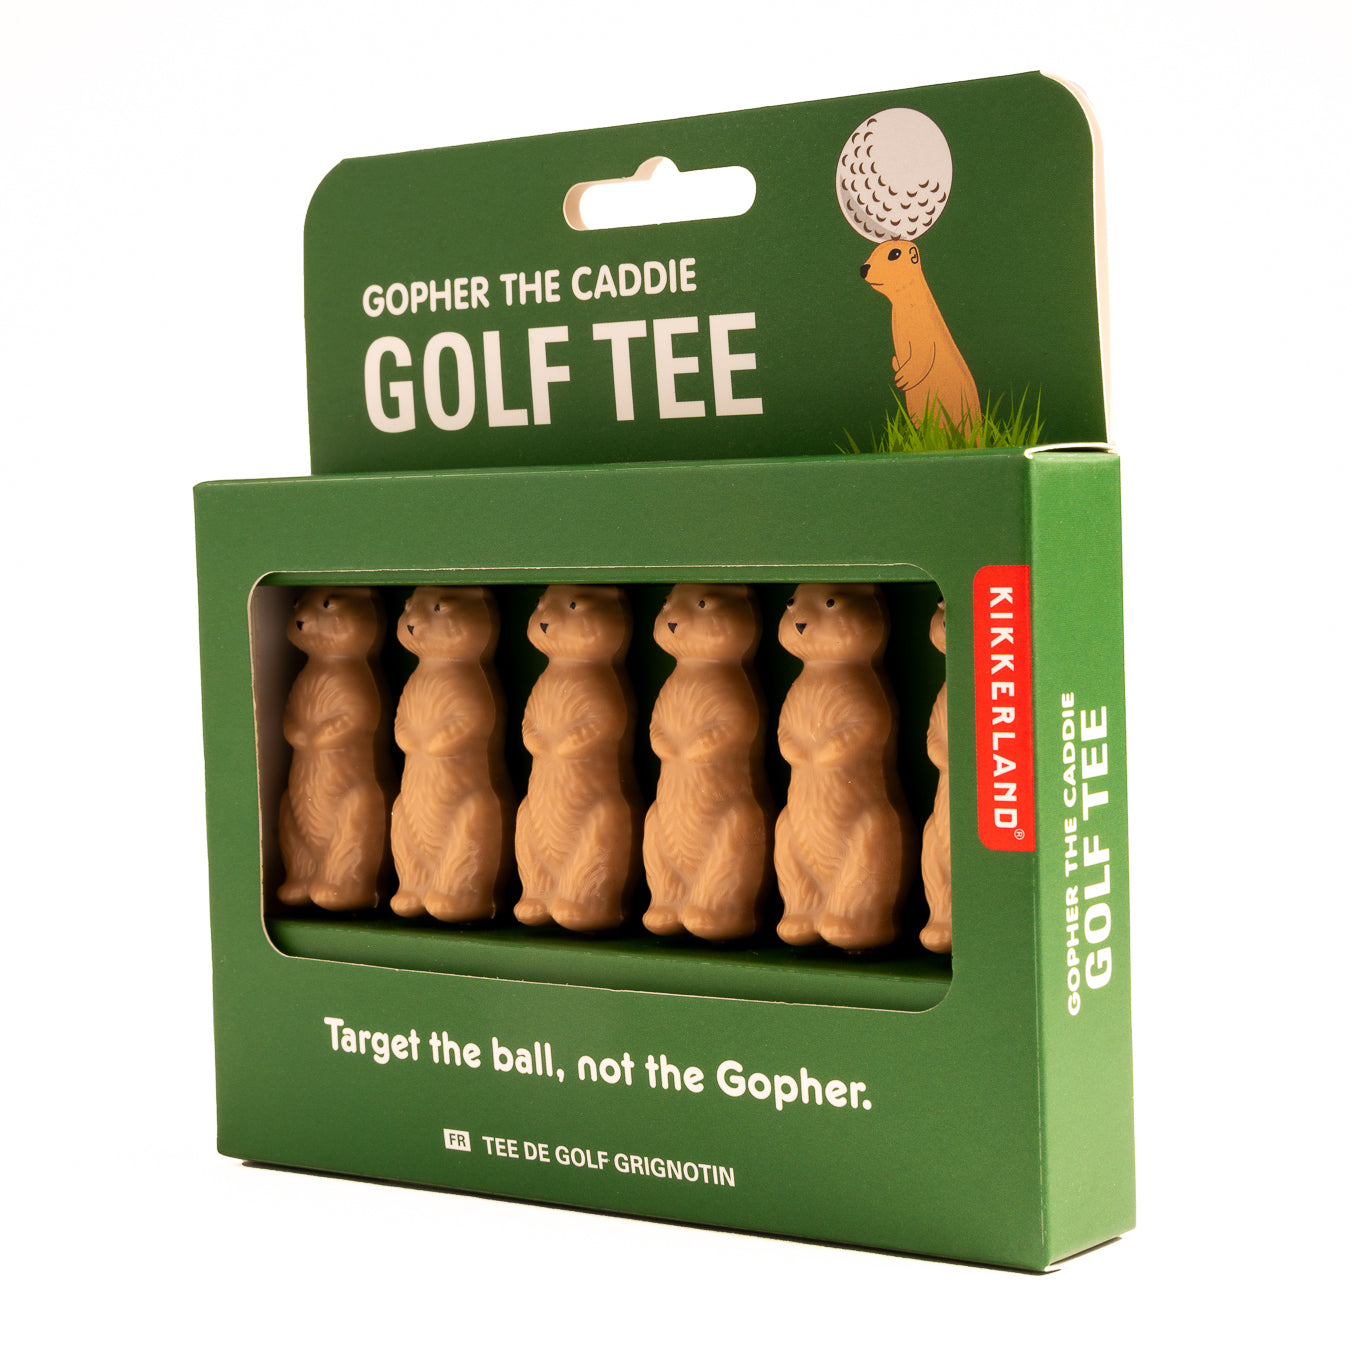 Gopher the Caddie Golf Tee